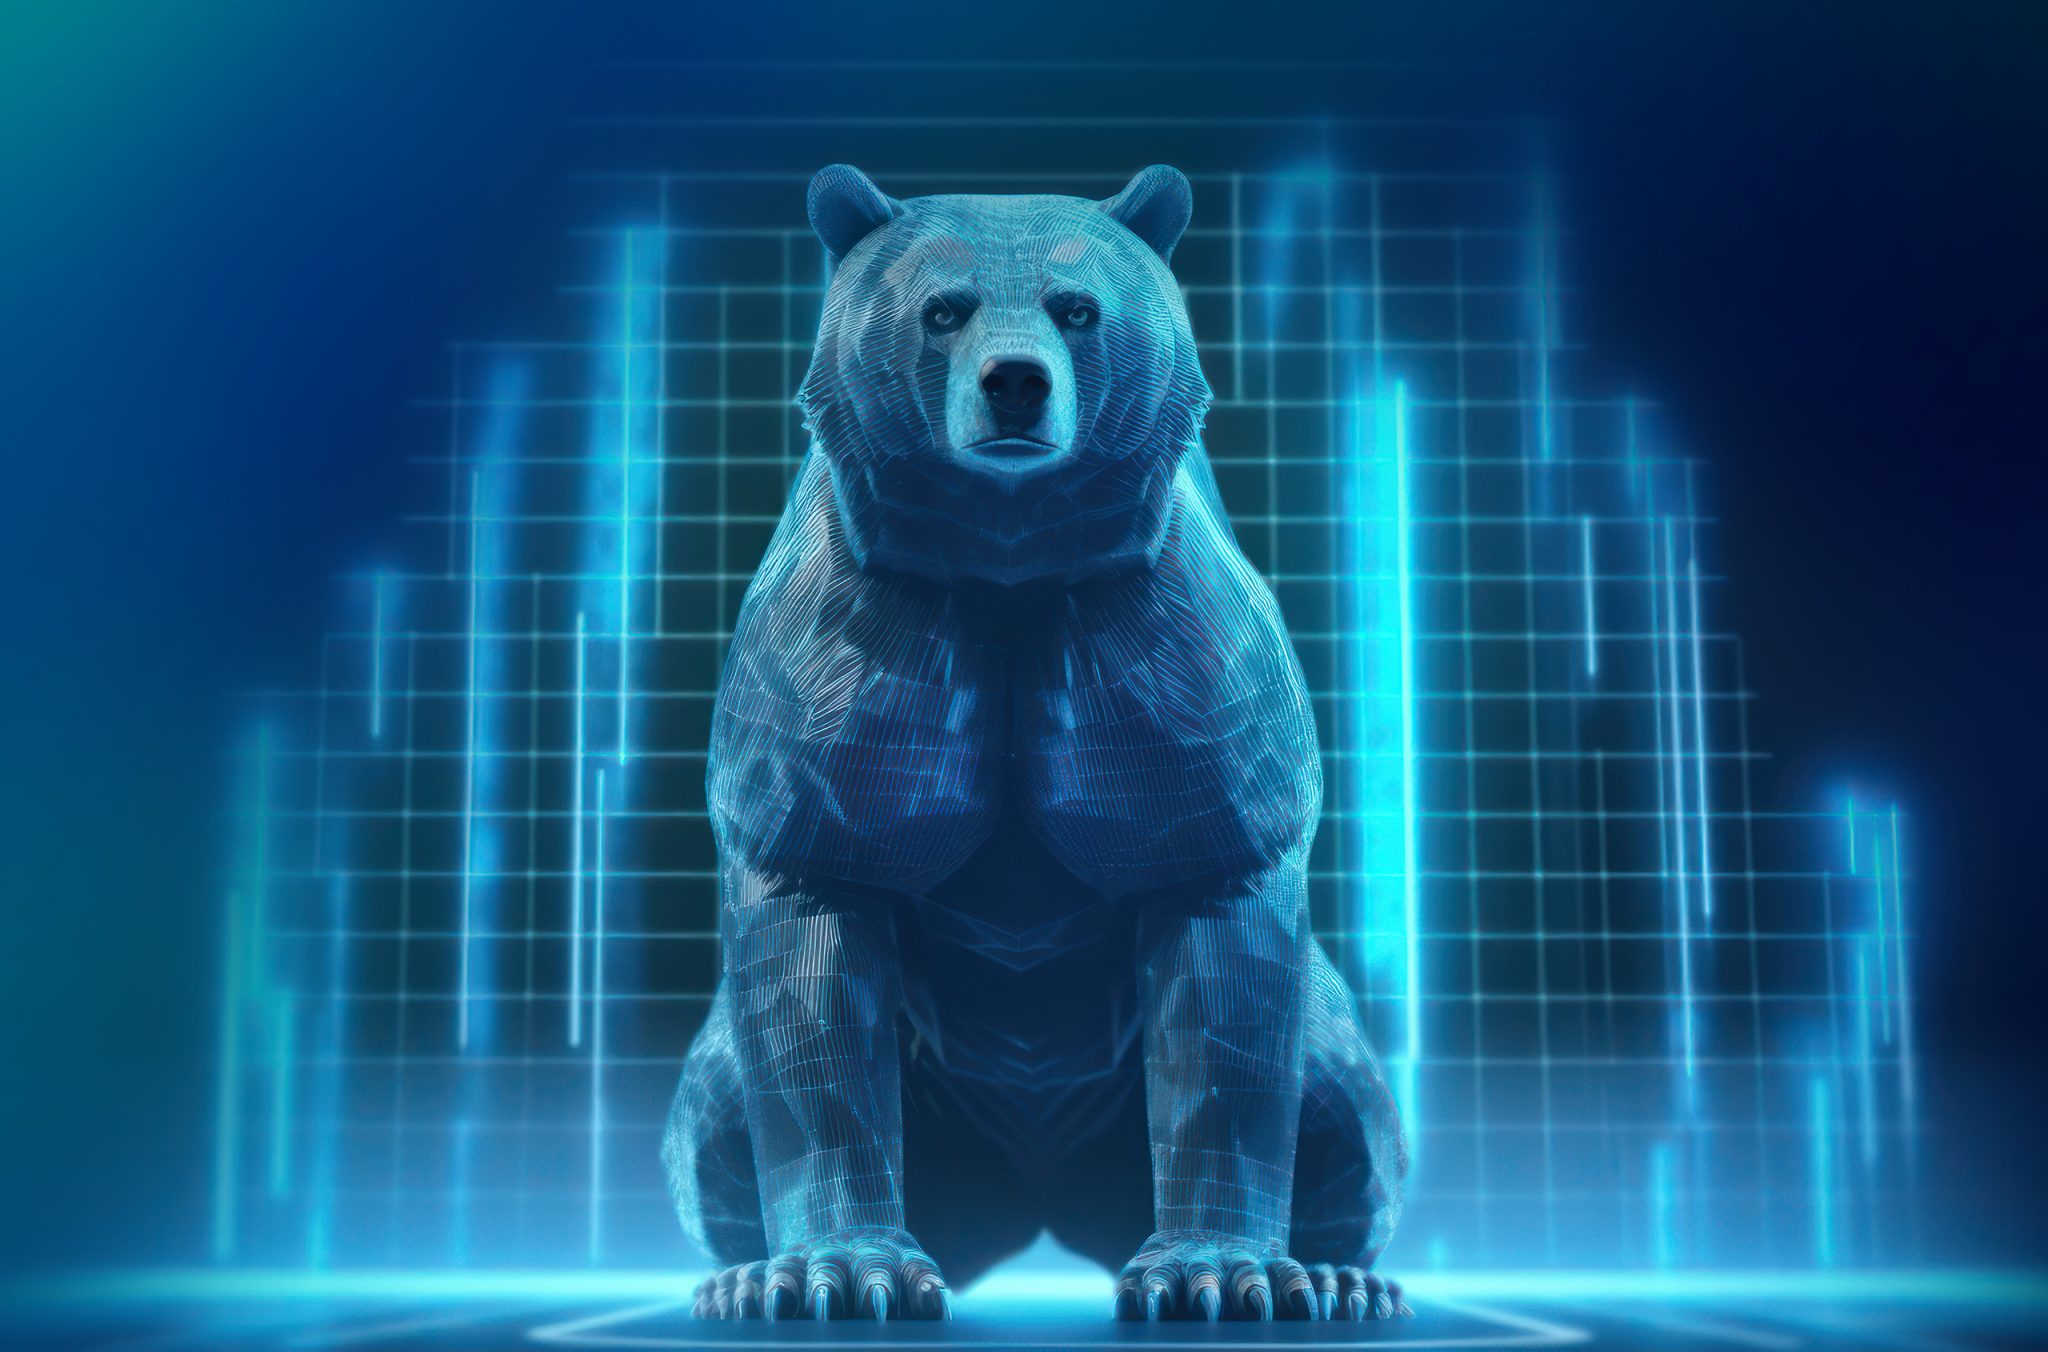 Bear Markets Explained